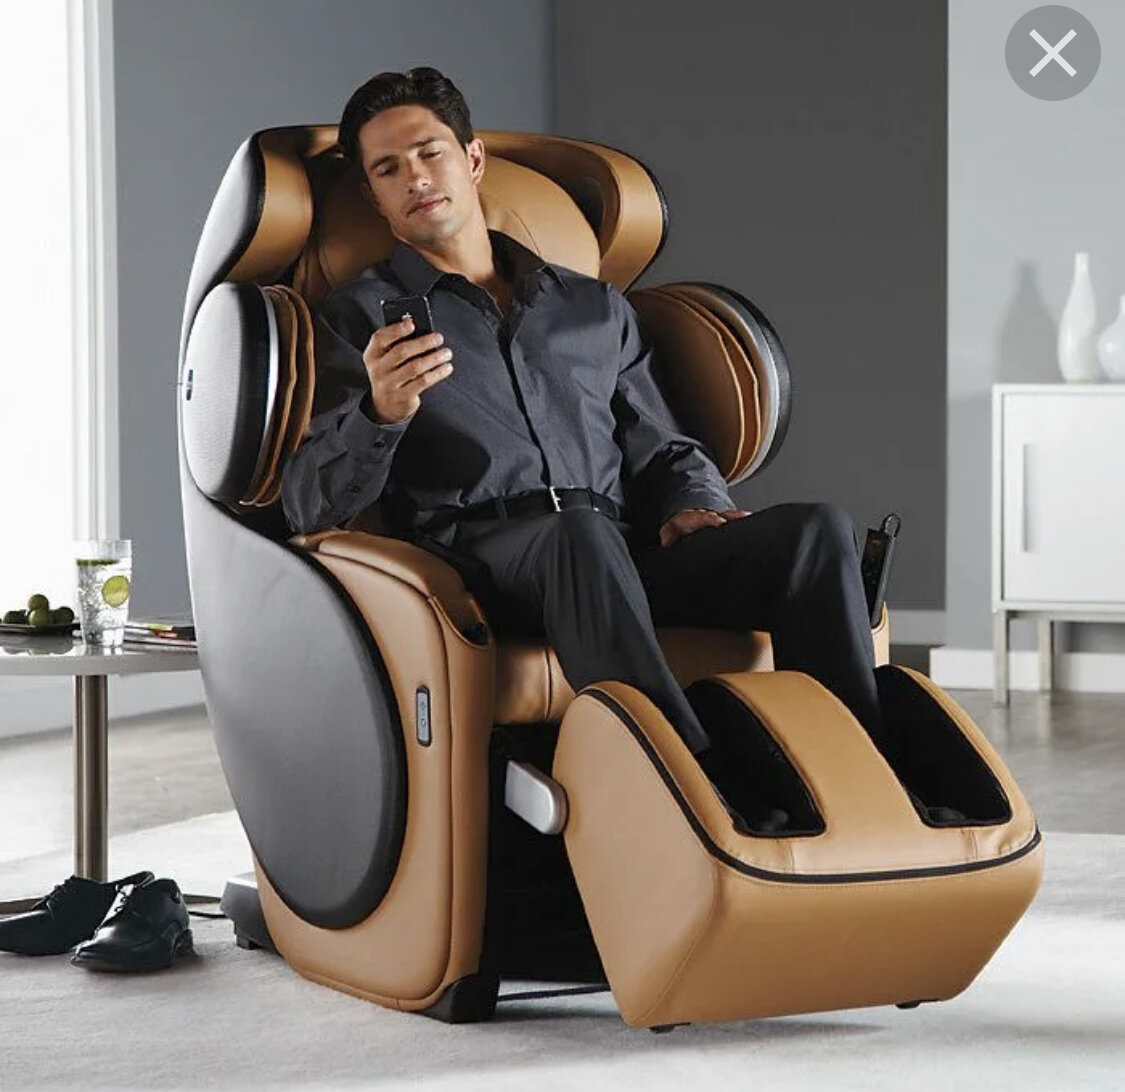 реклама для массажного кресла